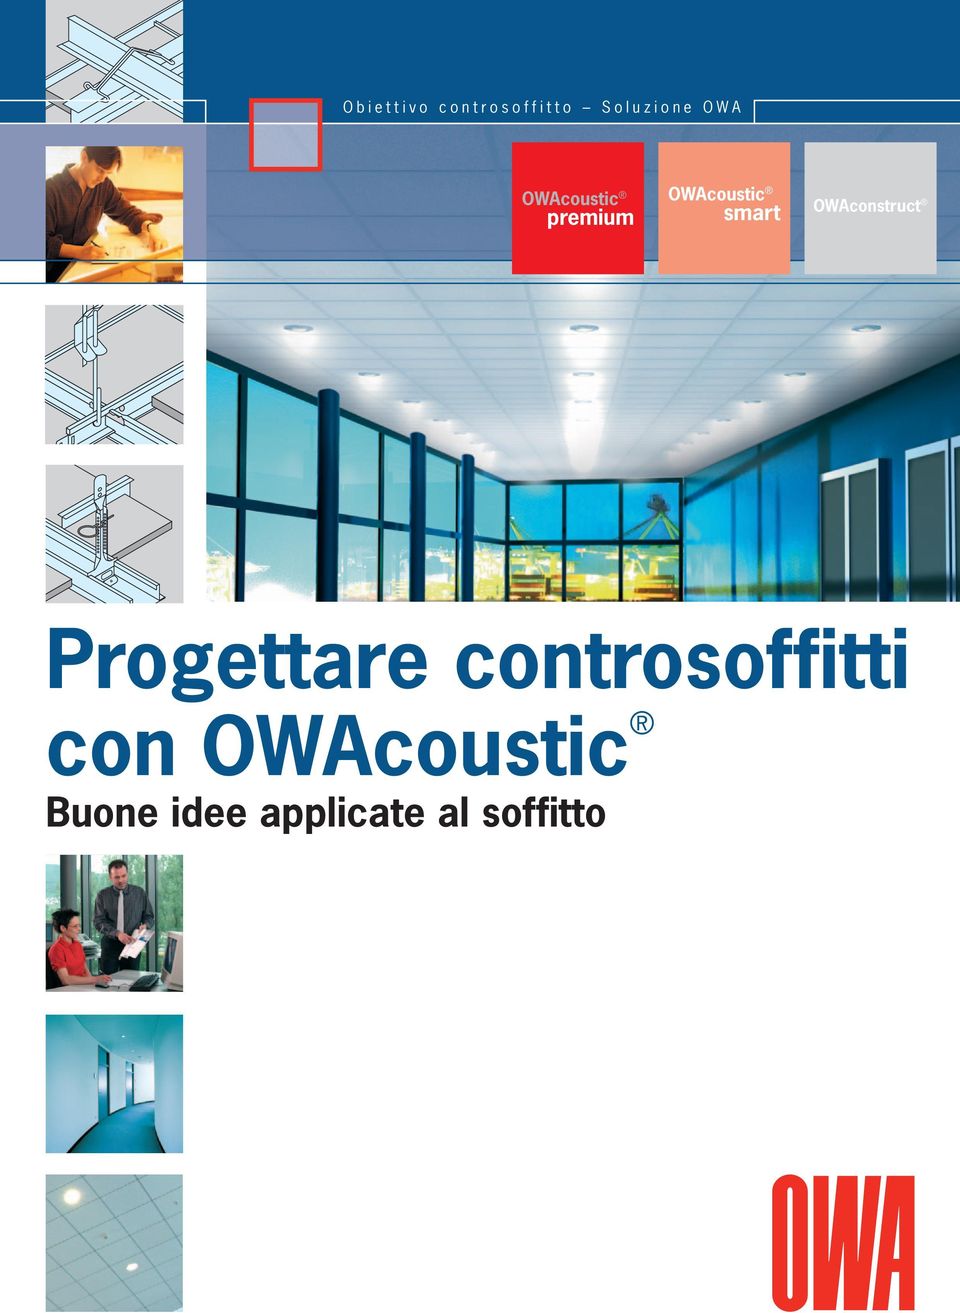 OWAconstruct smart Progettare